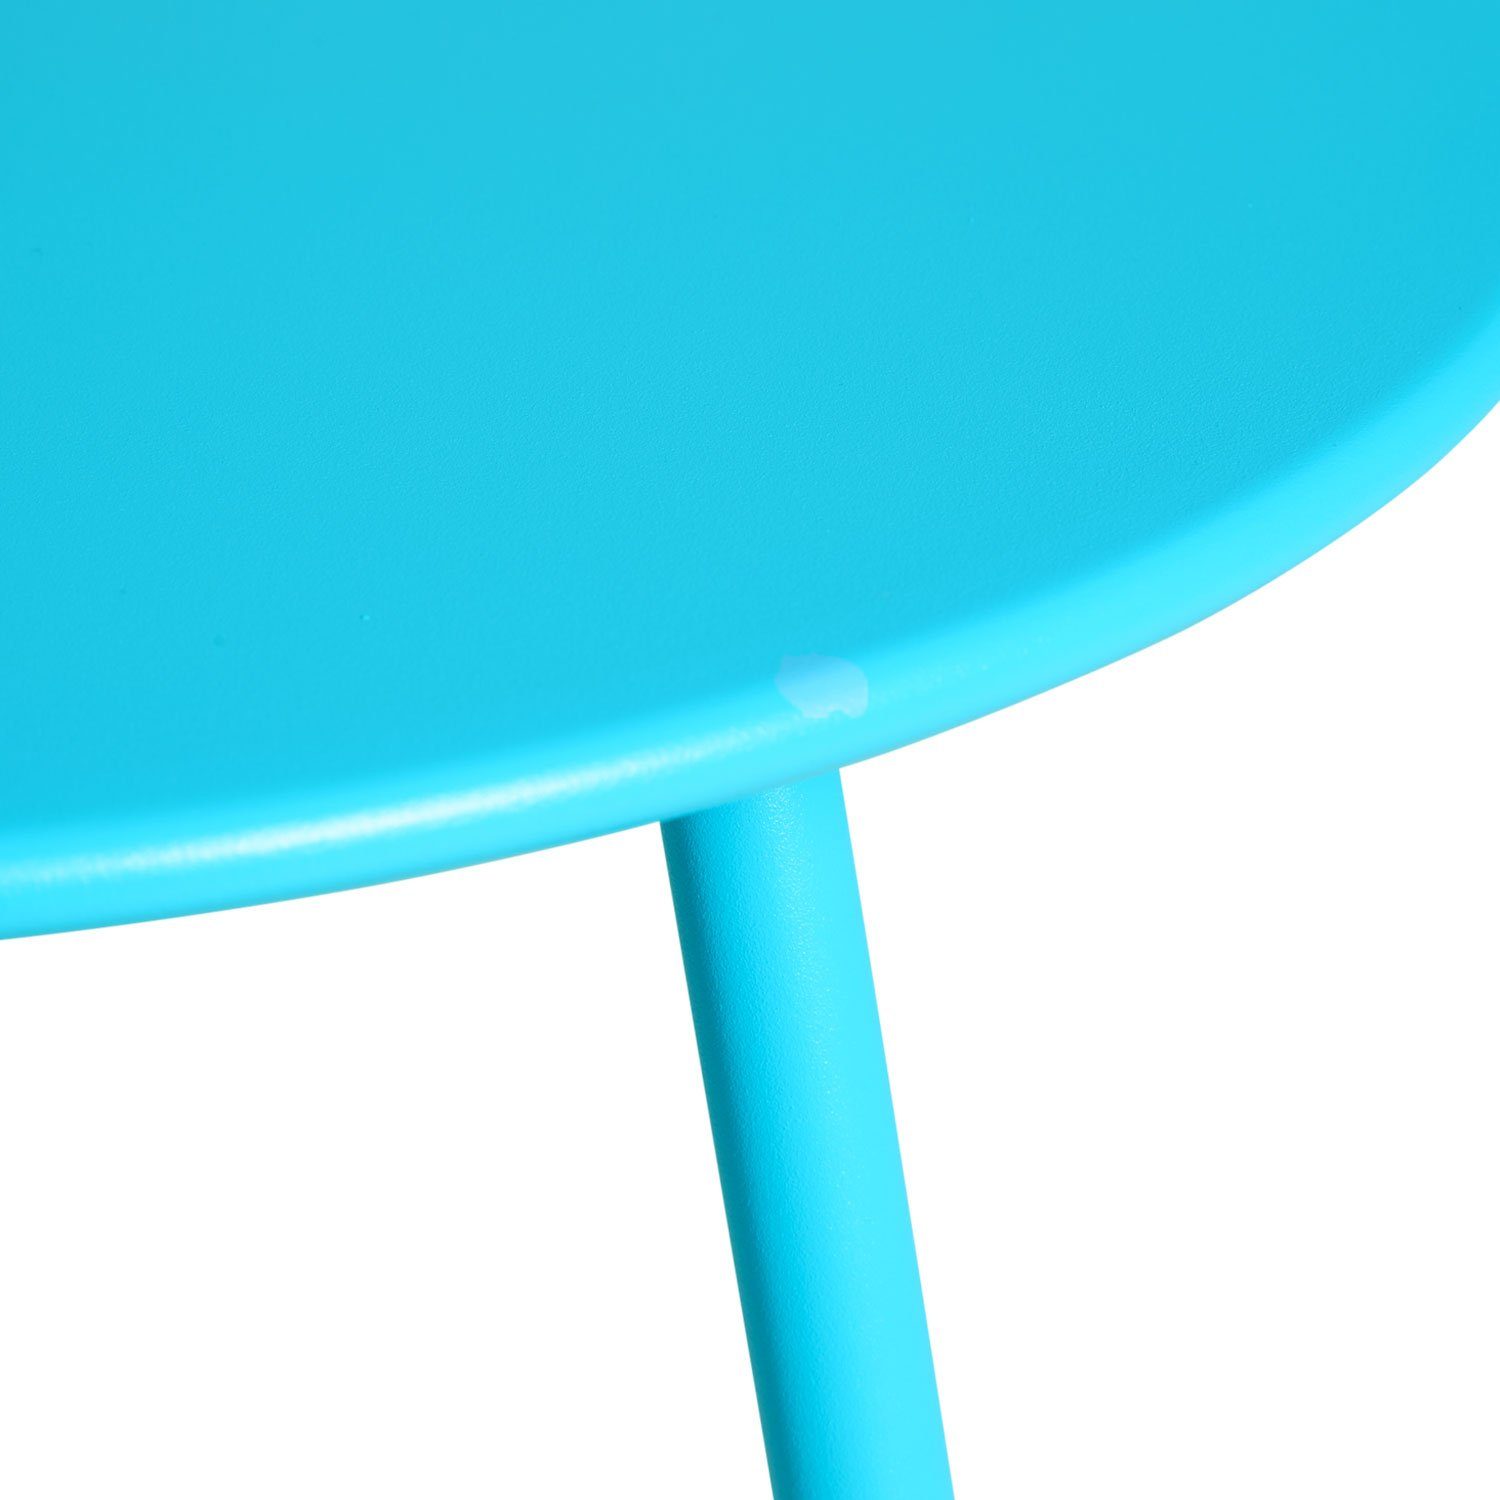 Beistelltisch Tisch blau Metall Gartentisch | blau blau Homestyle4u Set) Rund | (kein Kaffeetisch